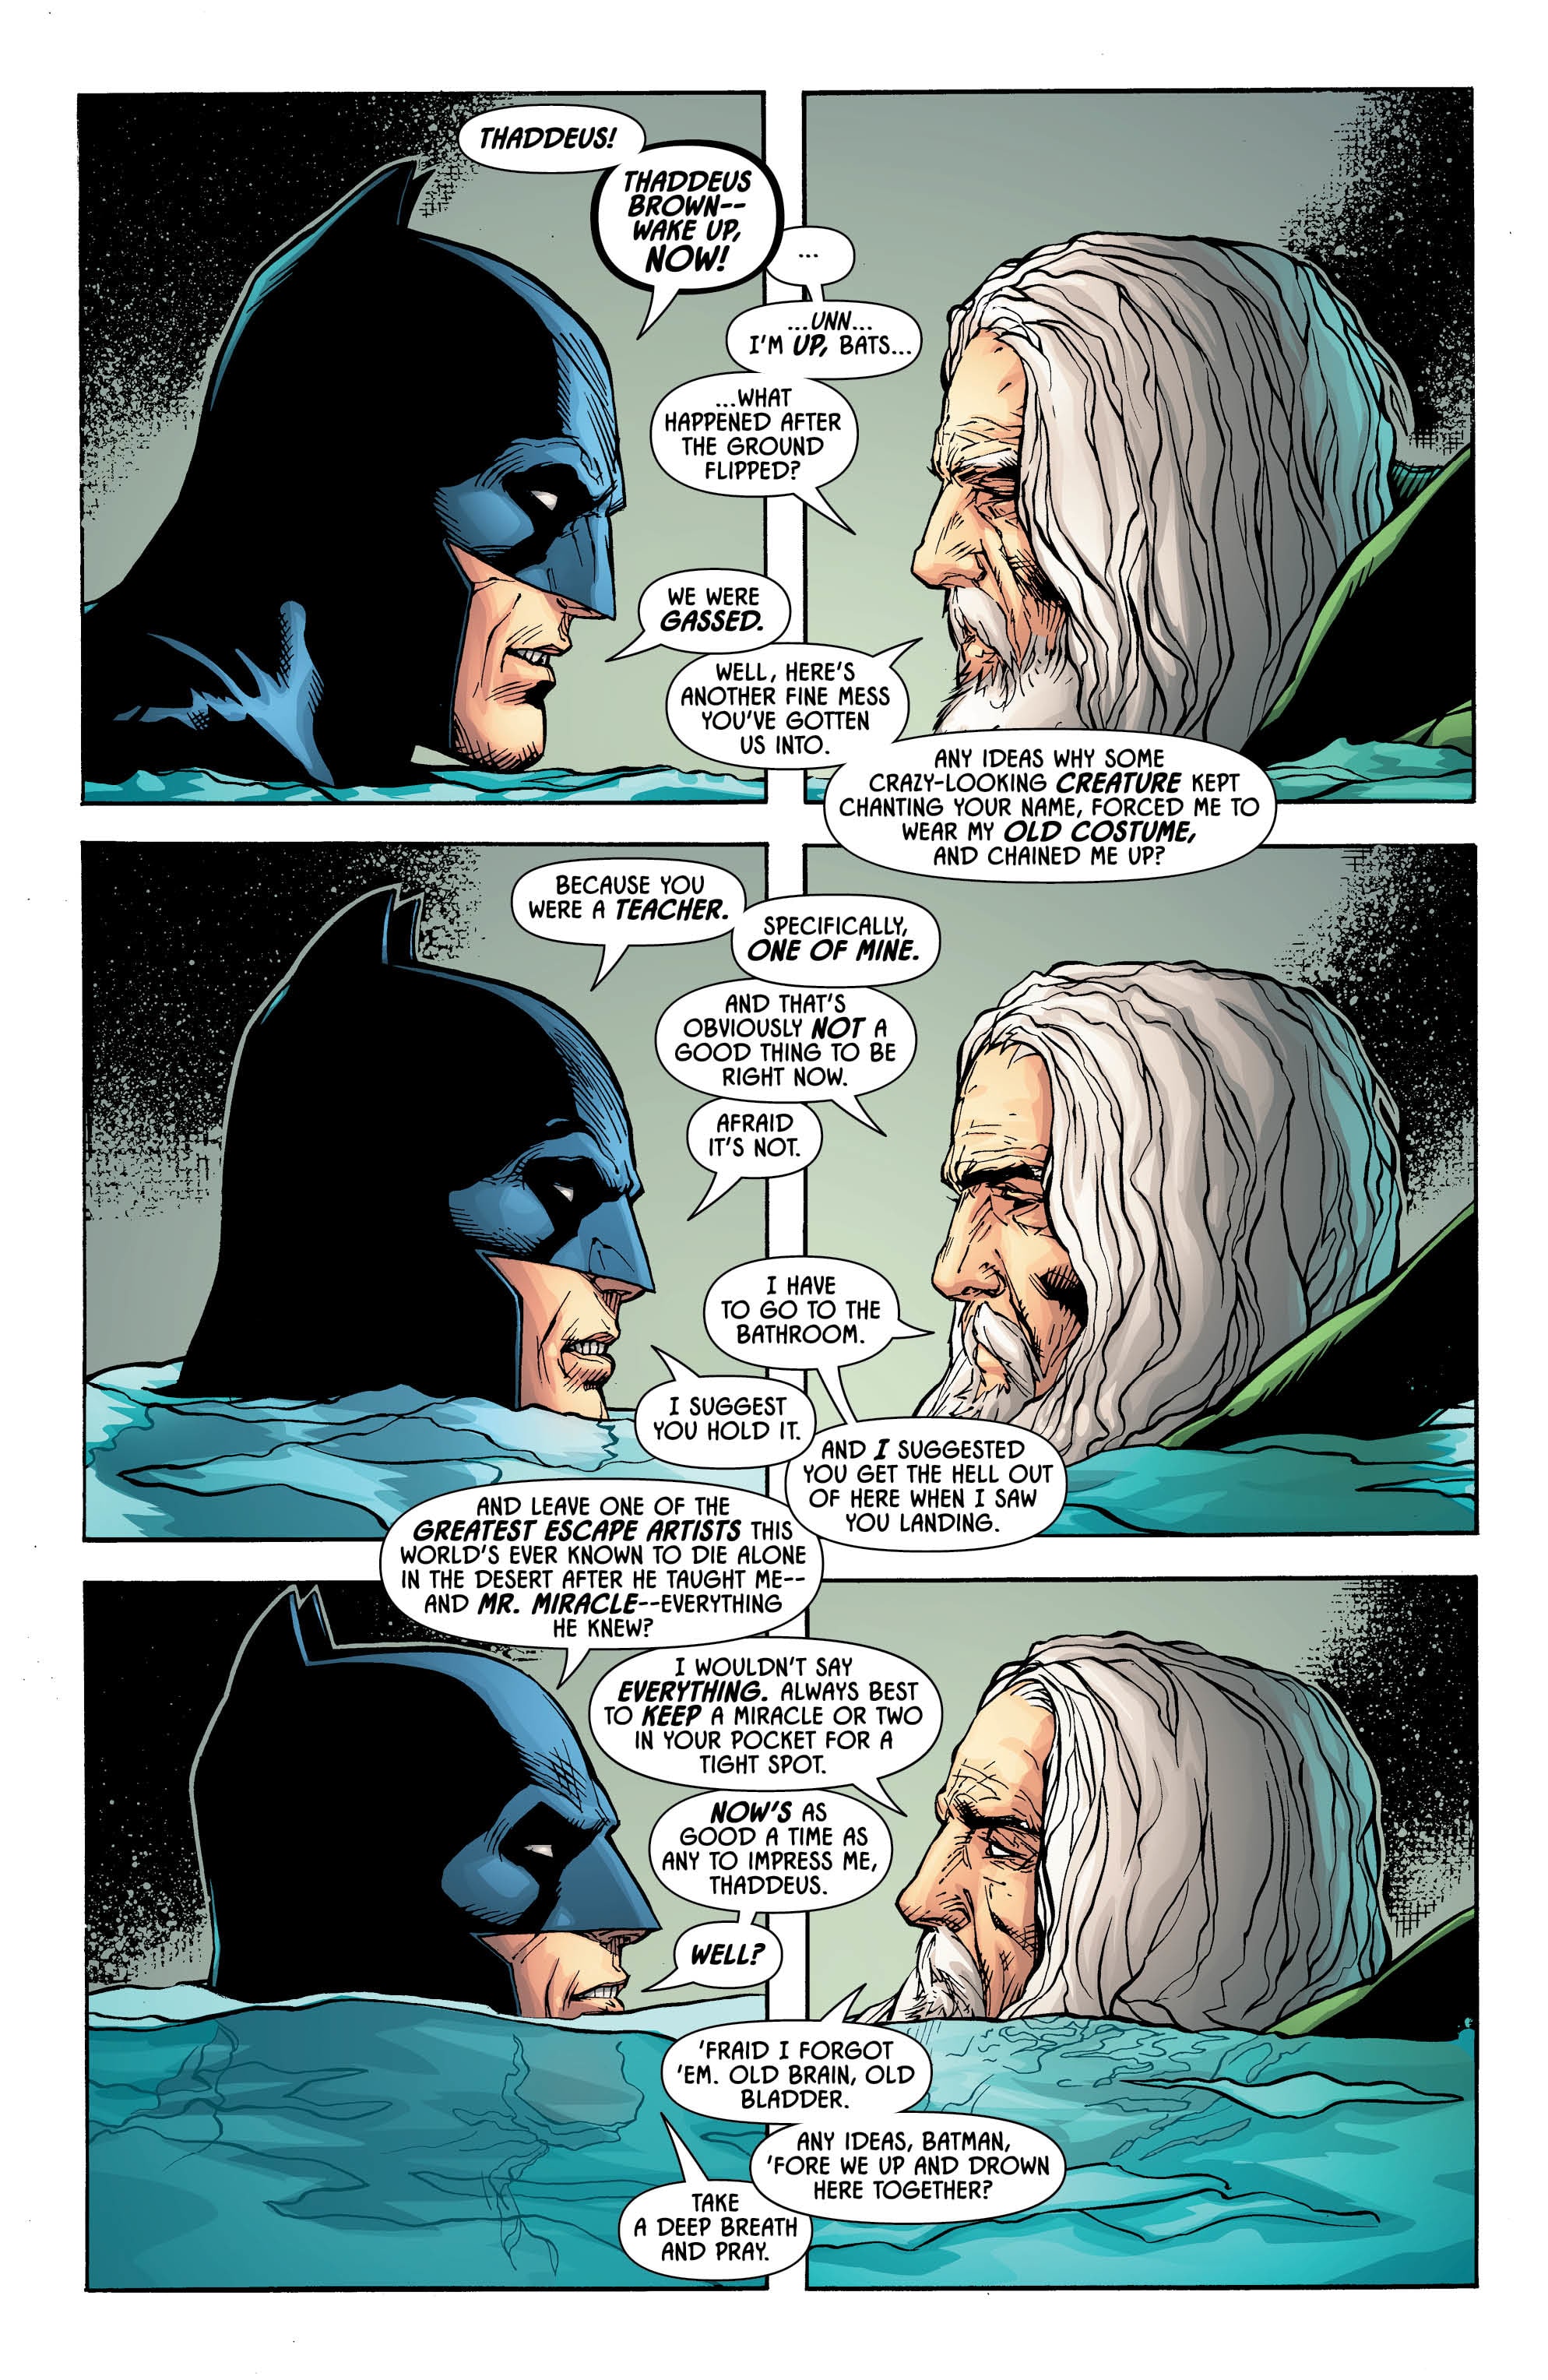 Detective Comics #997 review: Pass the Bat Shark Repellent